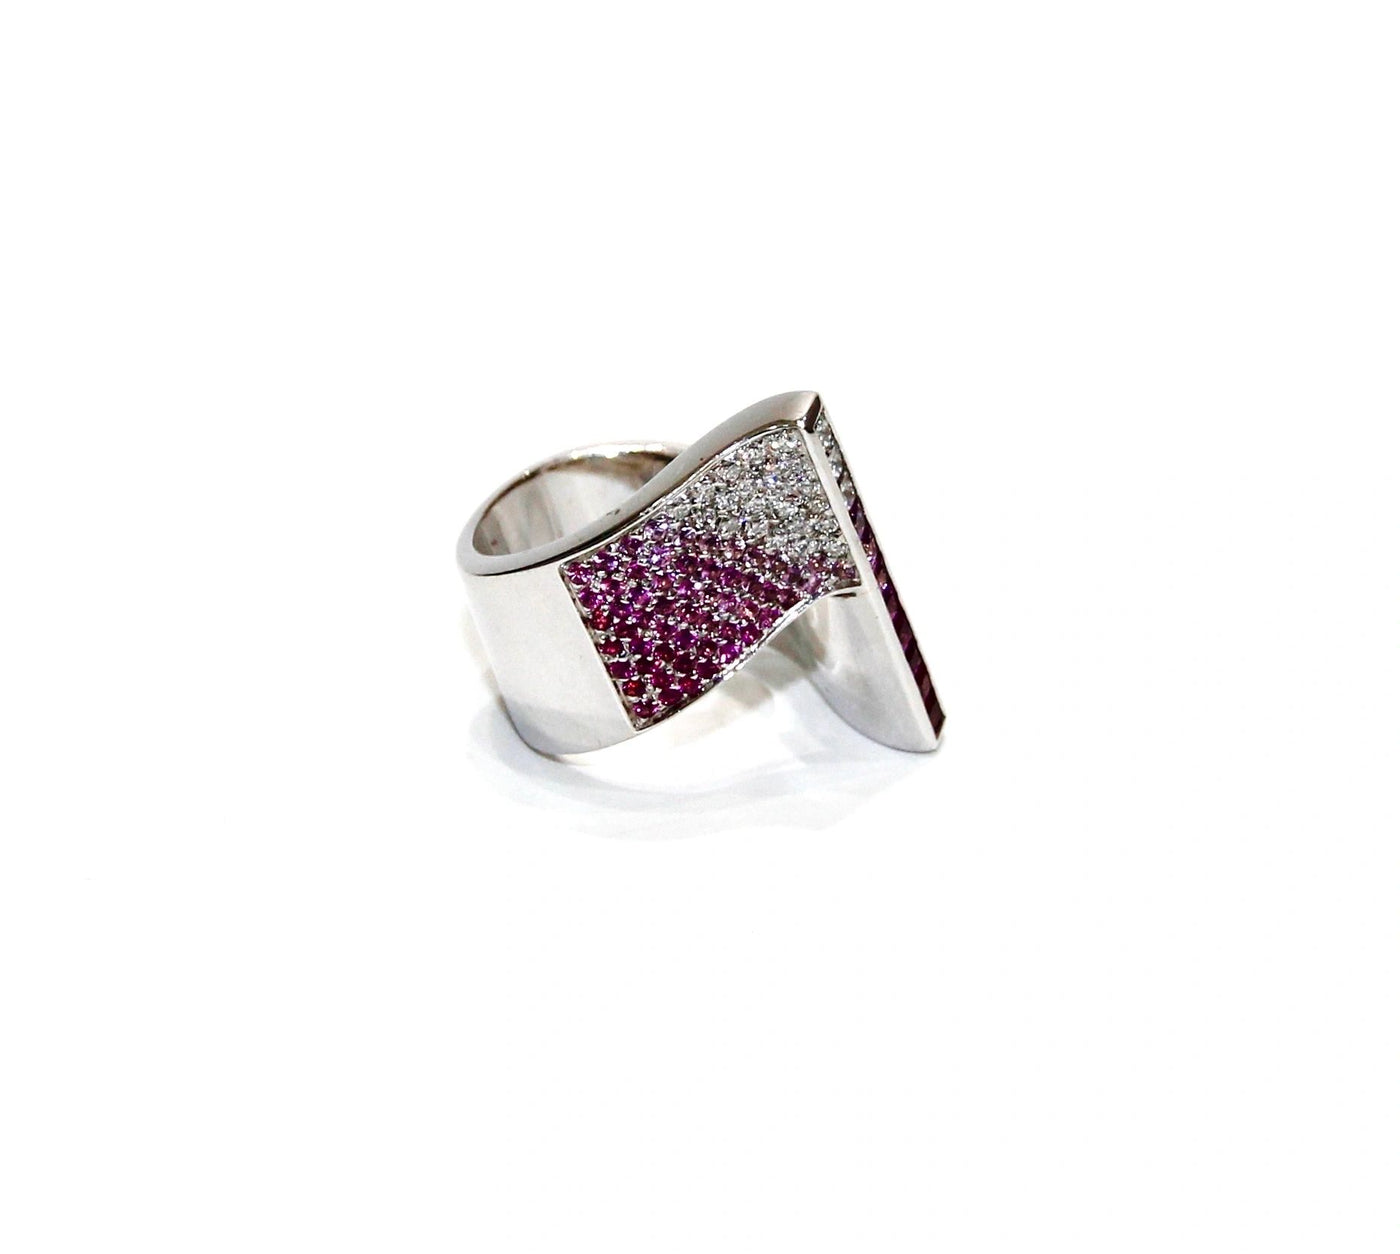 Stefan Hafner 18K White Gold Diamond And Sapphire Ring